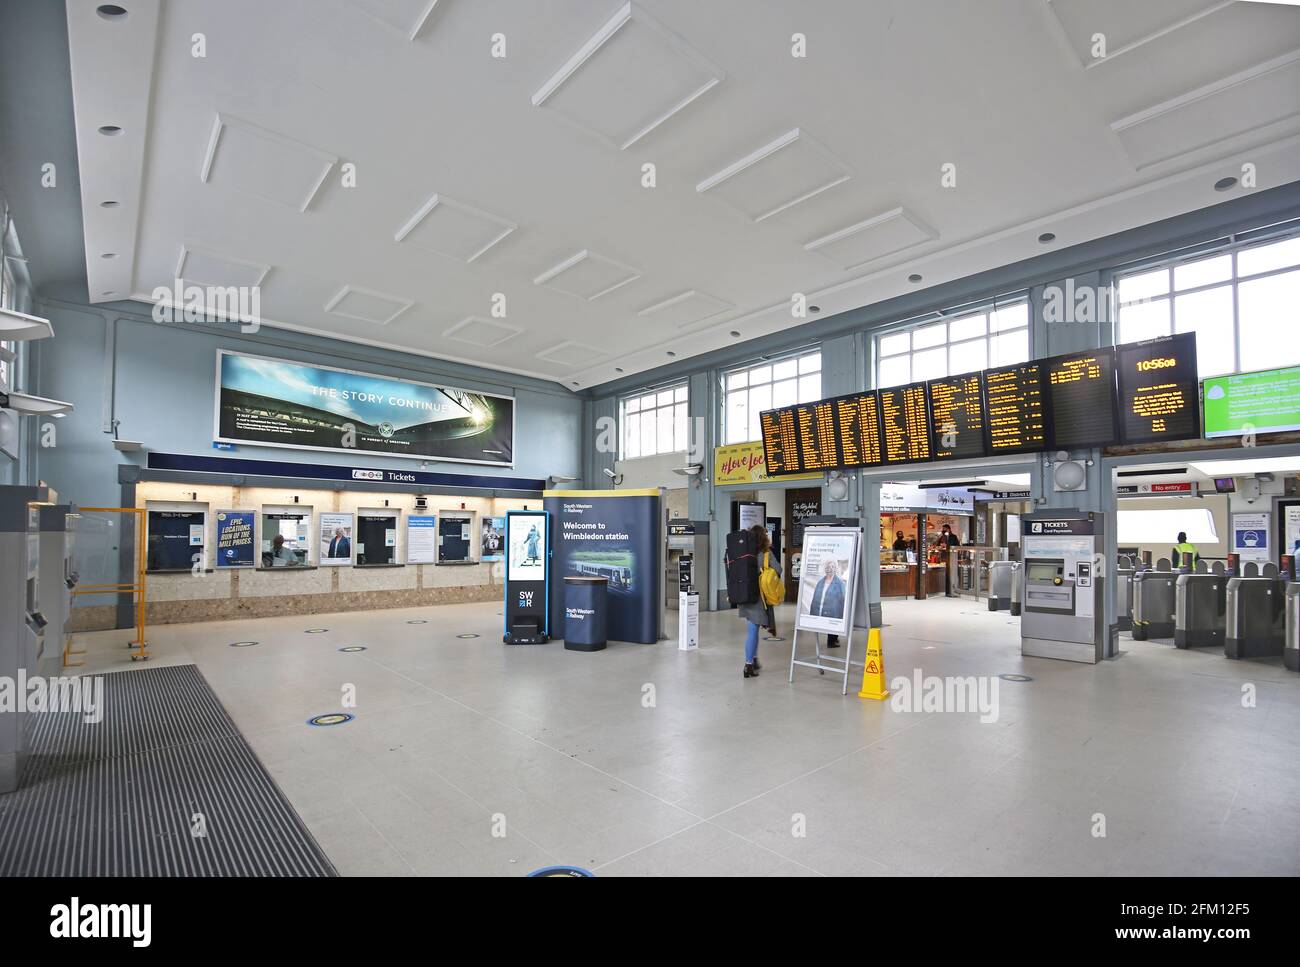 Haupttickethalle am Bahnhof Wimbledon, London, Großbritannien. Zeigt Ticketschalter und Abflugtafel. Stockfoto